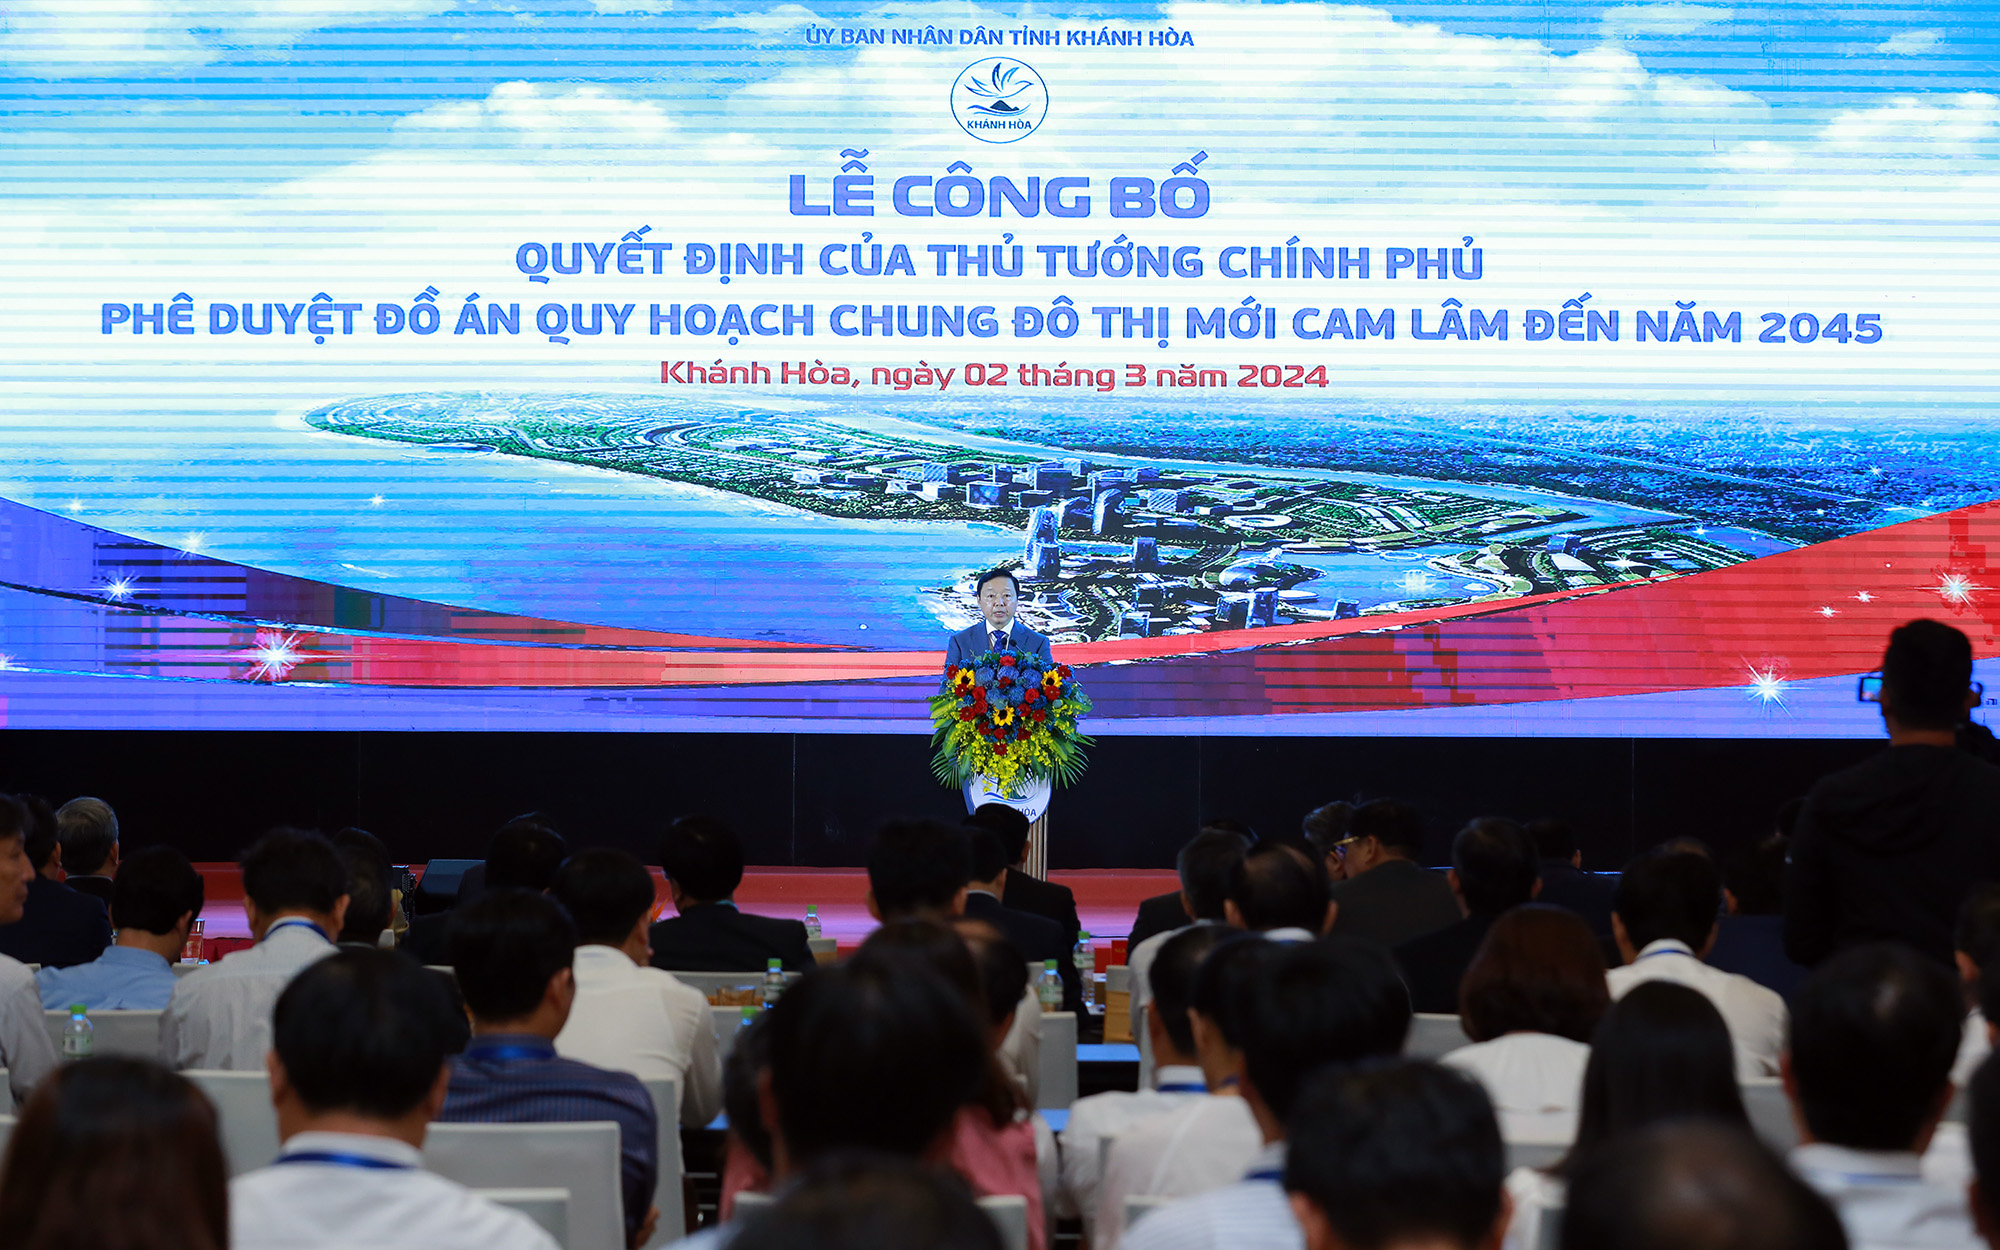 Phó Thủ tướng Trần Hồng Hà tin tưởng Quy hoạch chung đô thị mới Cam Lâm sẽ sớm hoàn thành mục tiêu, làm lên những kỳ tích mới, giá trị mới, nổi trội - Ảnh: VGP/Minh Khôi